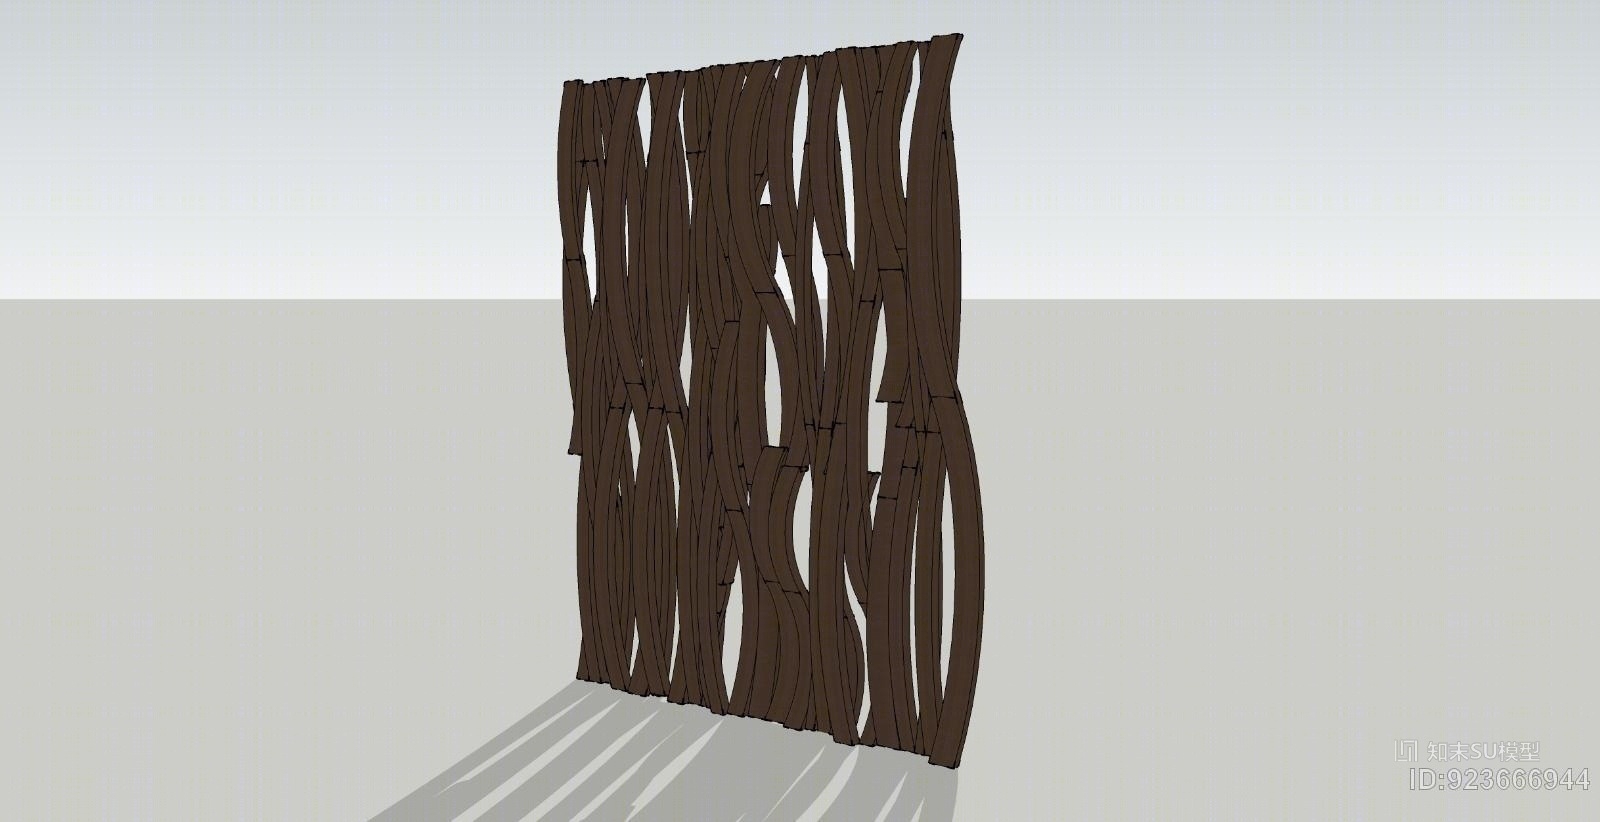 木材木纹造型墙su模型下载【id:923666944】